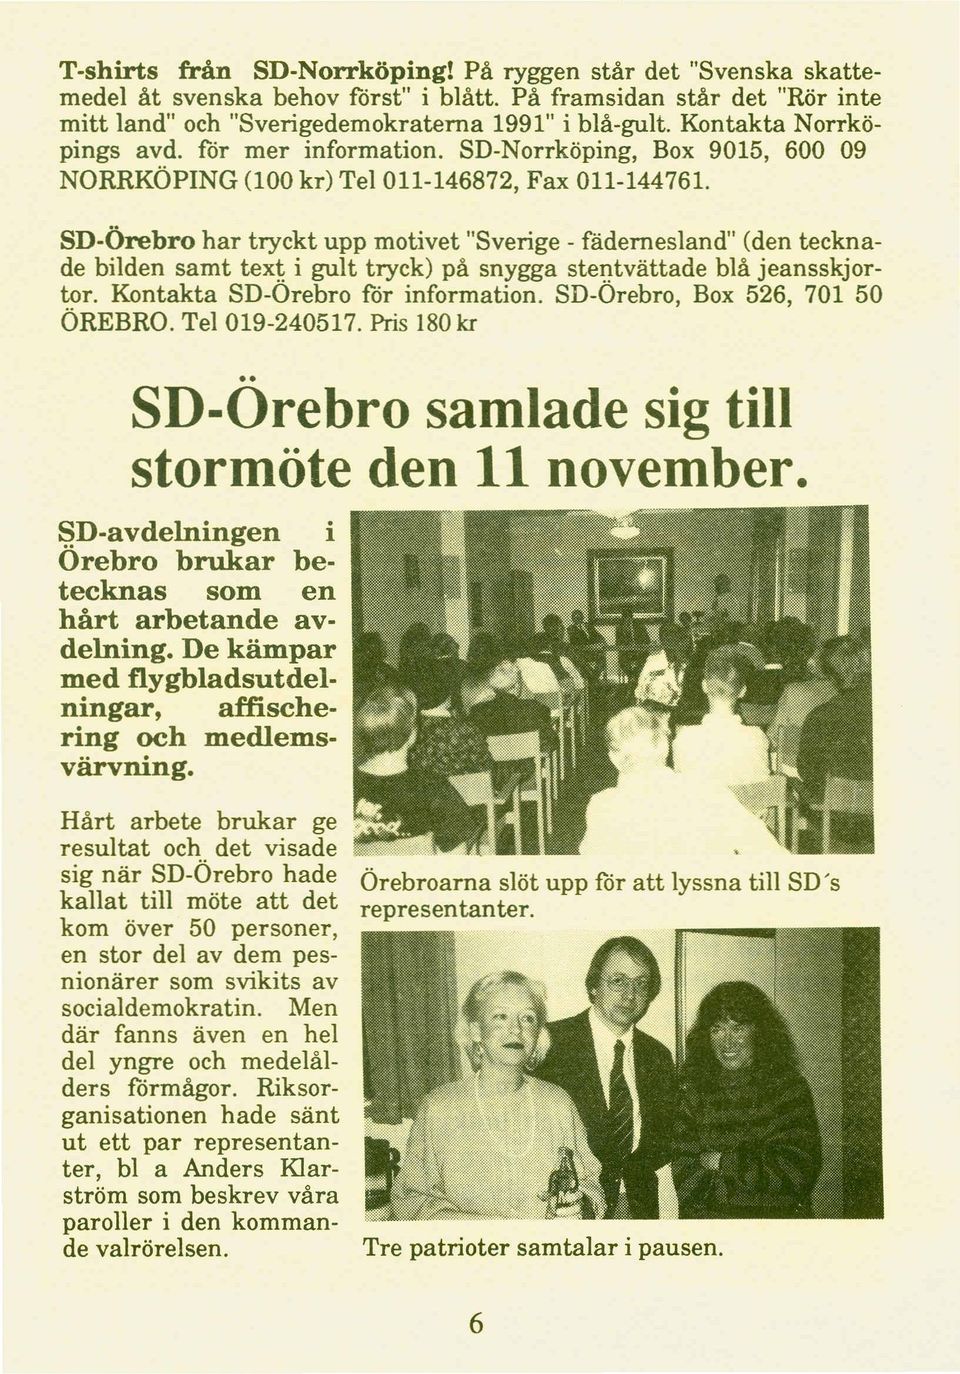 SD-Örebro har tryckt upp motivet "Sverige - fädernesland" (den tecknade bilden samt tex~ i gult tryck) på snygga stei)tvättade blå jeansskjortor. Kontakta SD-Orebro for information.